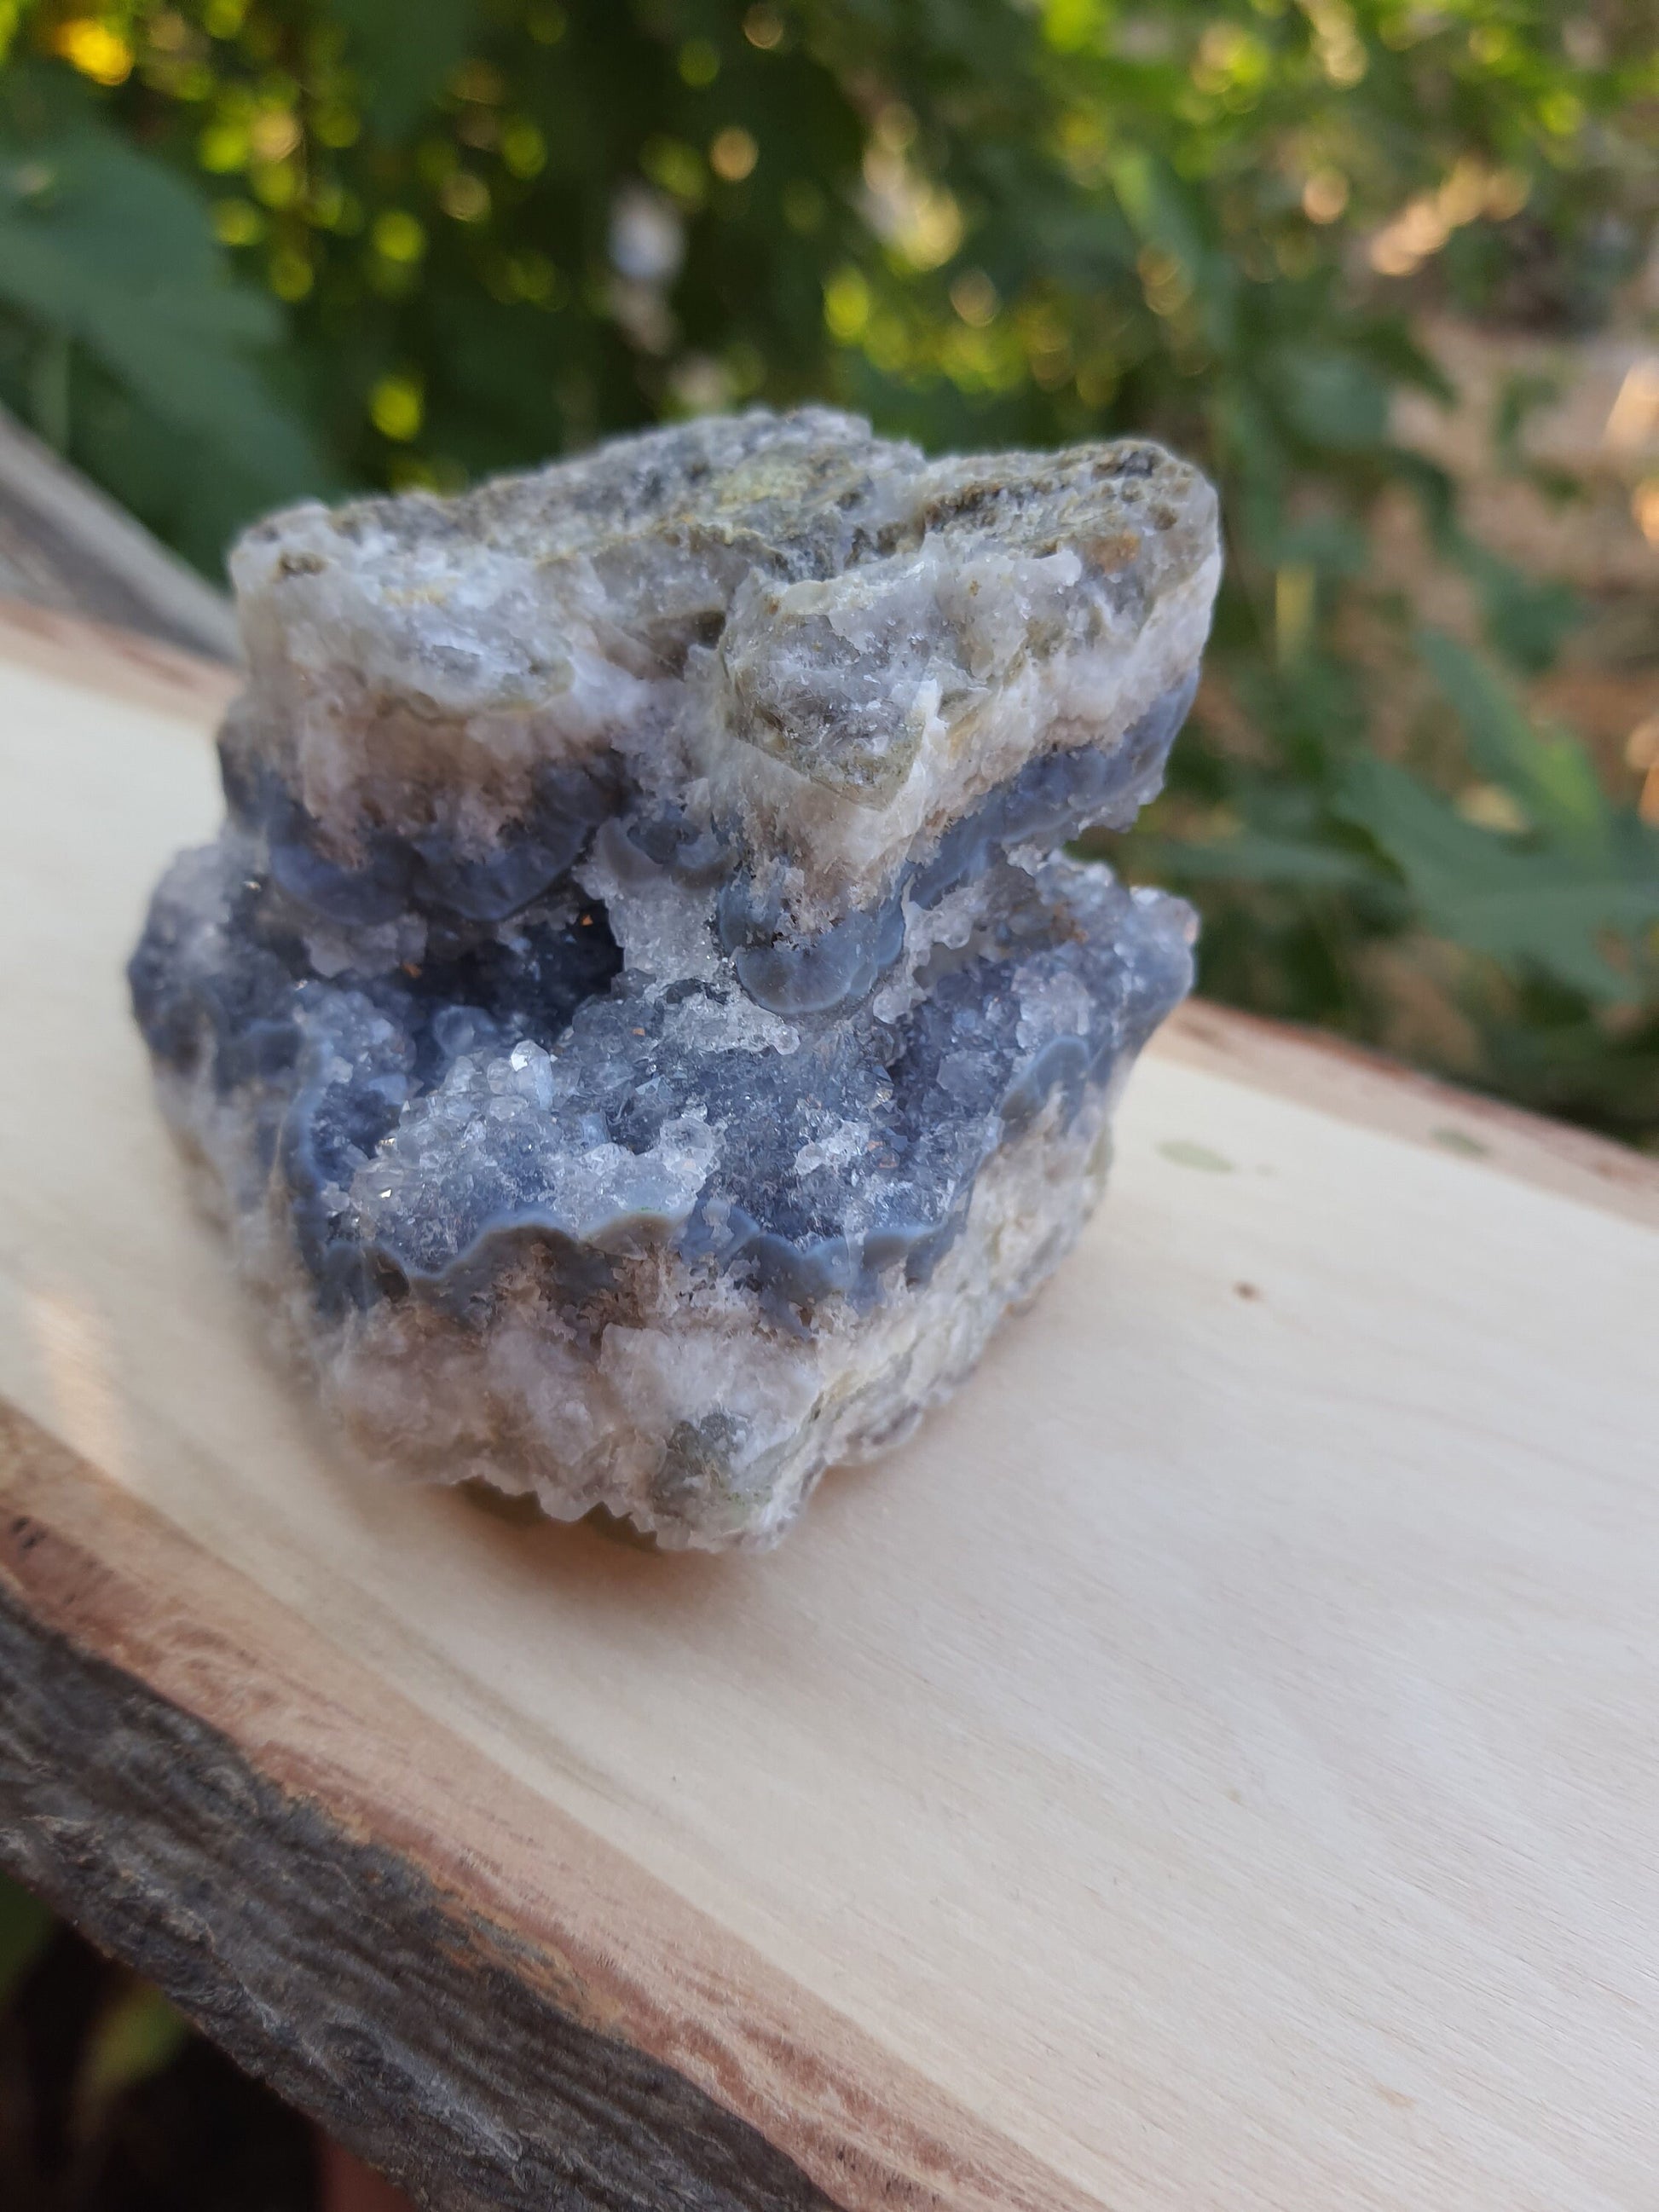 Blue Lace Agate Cluster, 182g Druzy Blue Lace Agate Geode, Sparkly blue Lace Agate, Blue Agate Crystal, Blue Lace Agate, Raw Crystal Cluster